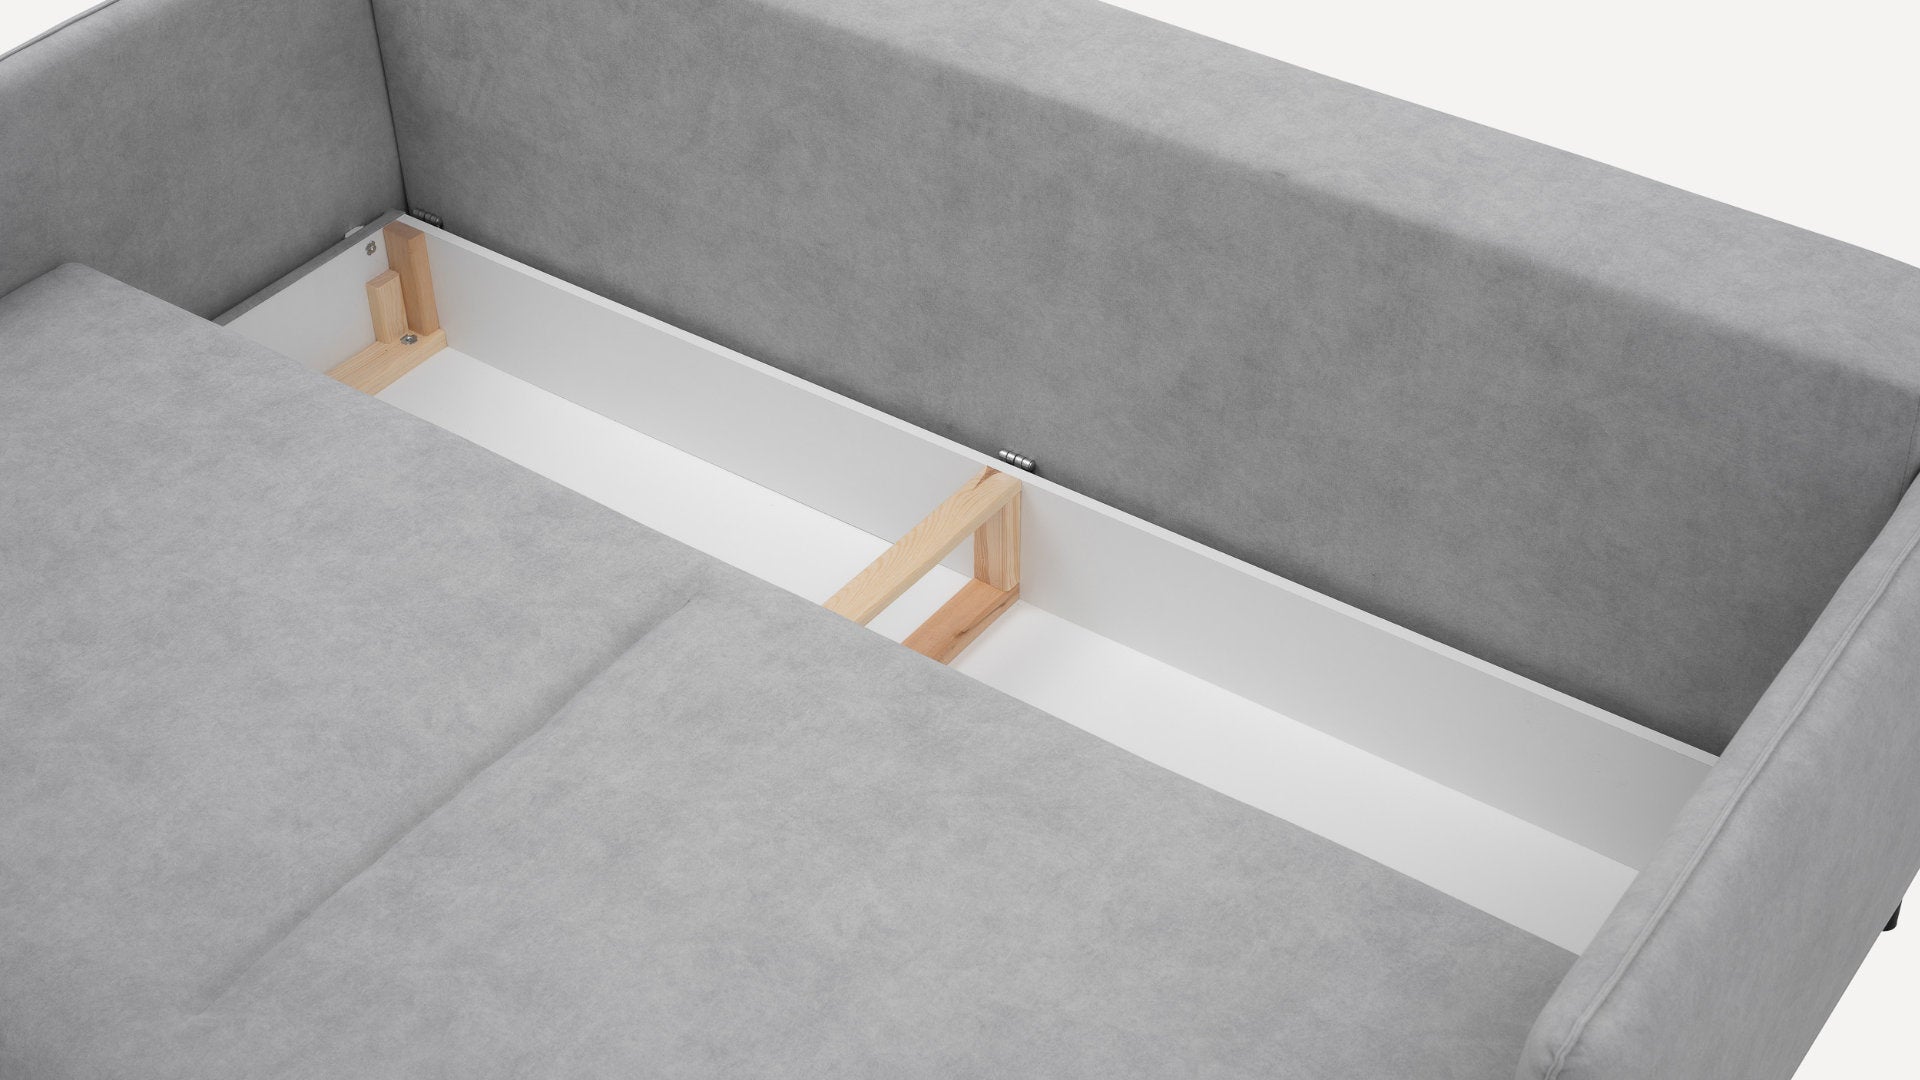 Sofa Benet DL Flausz - Benet